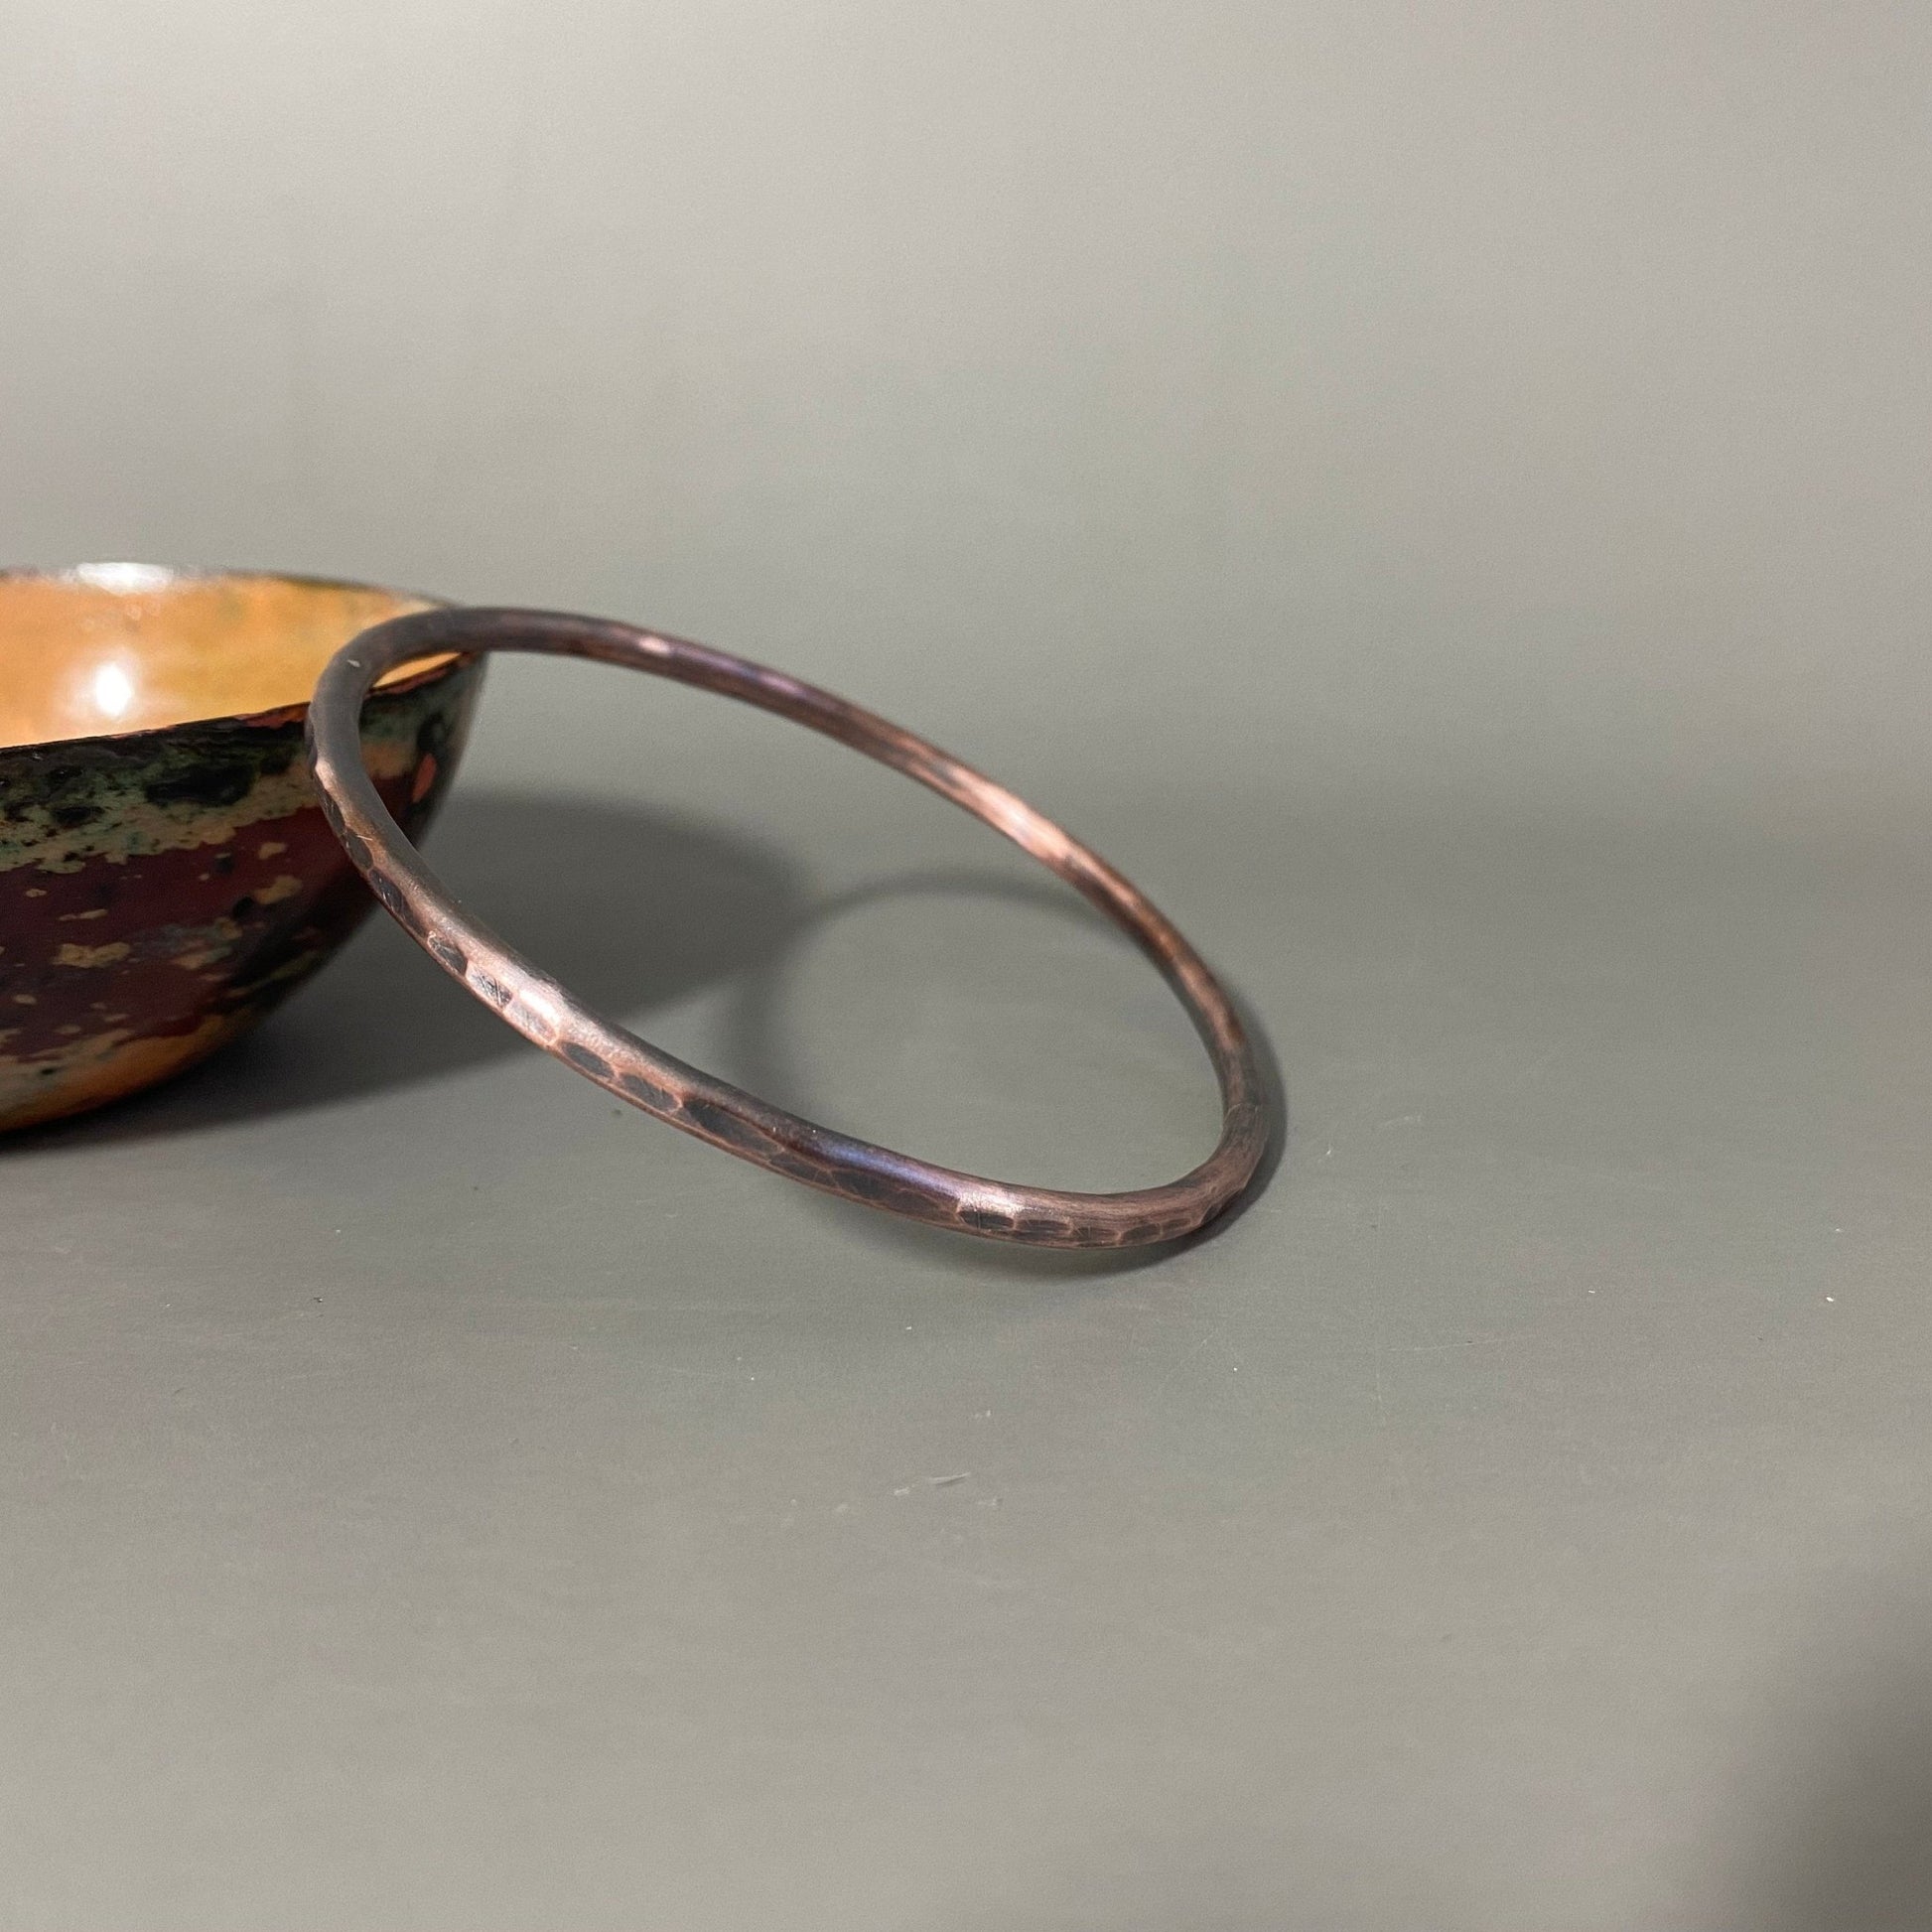 Hand Forged Copper Bangle, Hammered Bangle, Unisex Bracelet - MaisyPlum